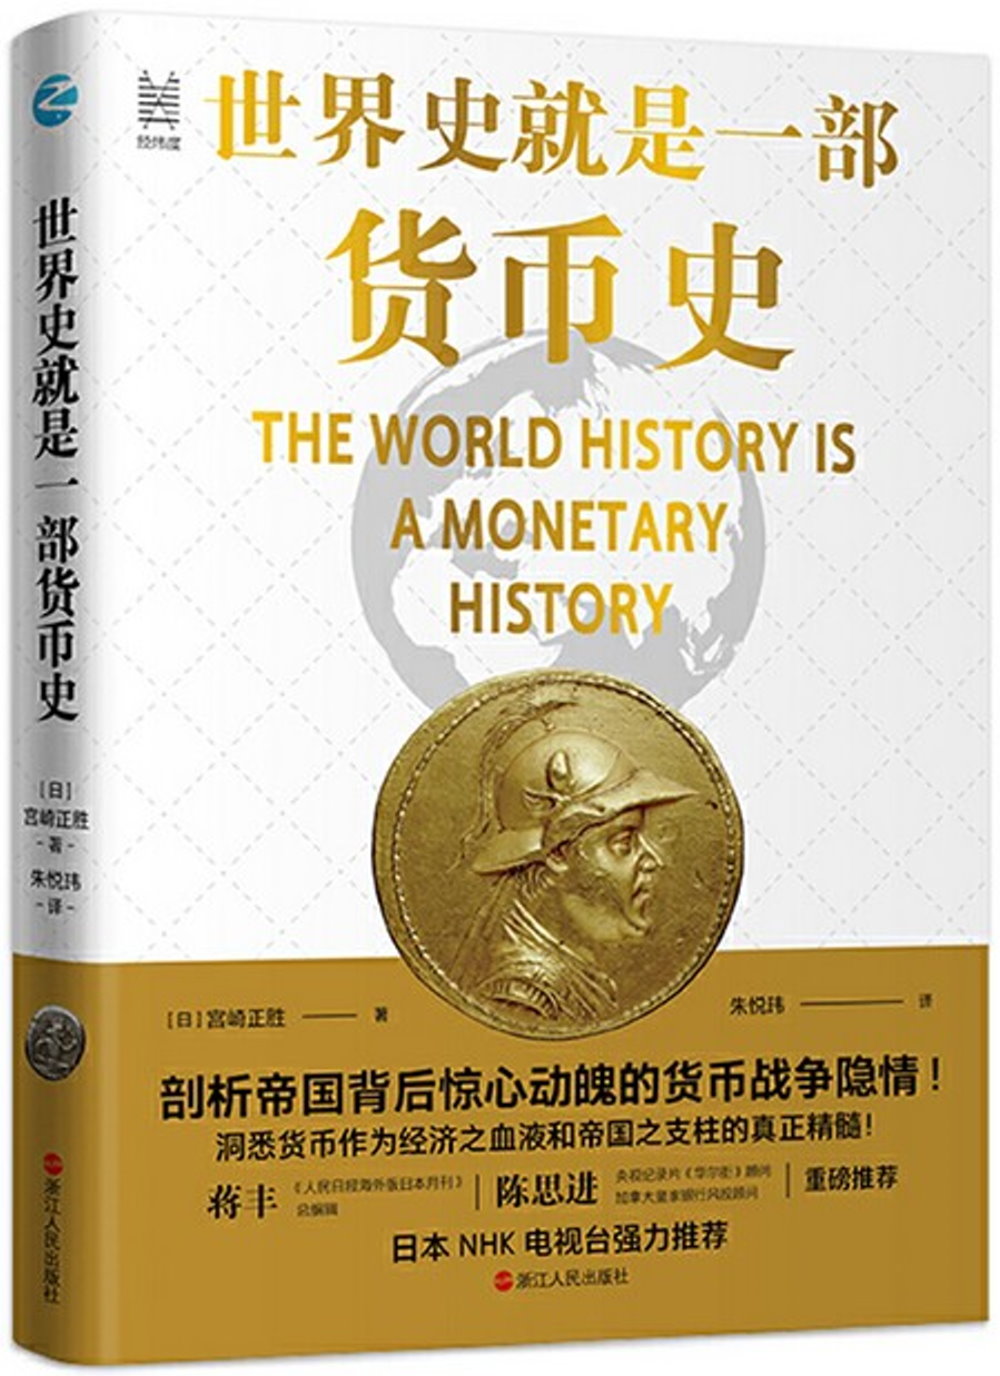 世界史就是一部貨幣史